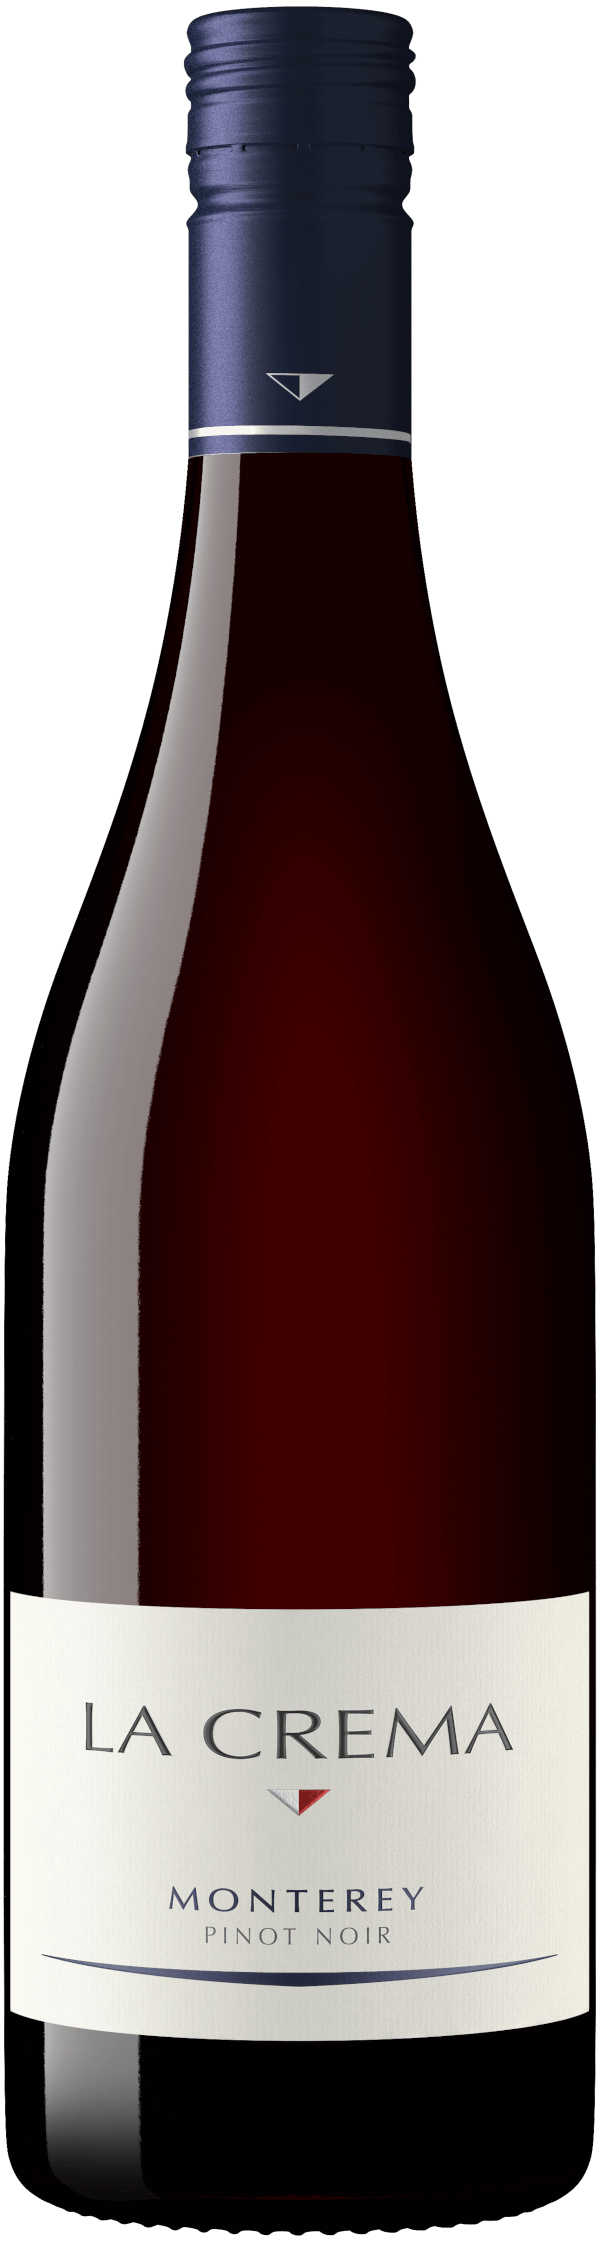 2019 Monterey Pinot Noir